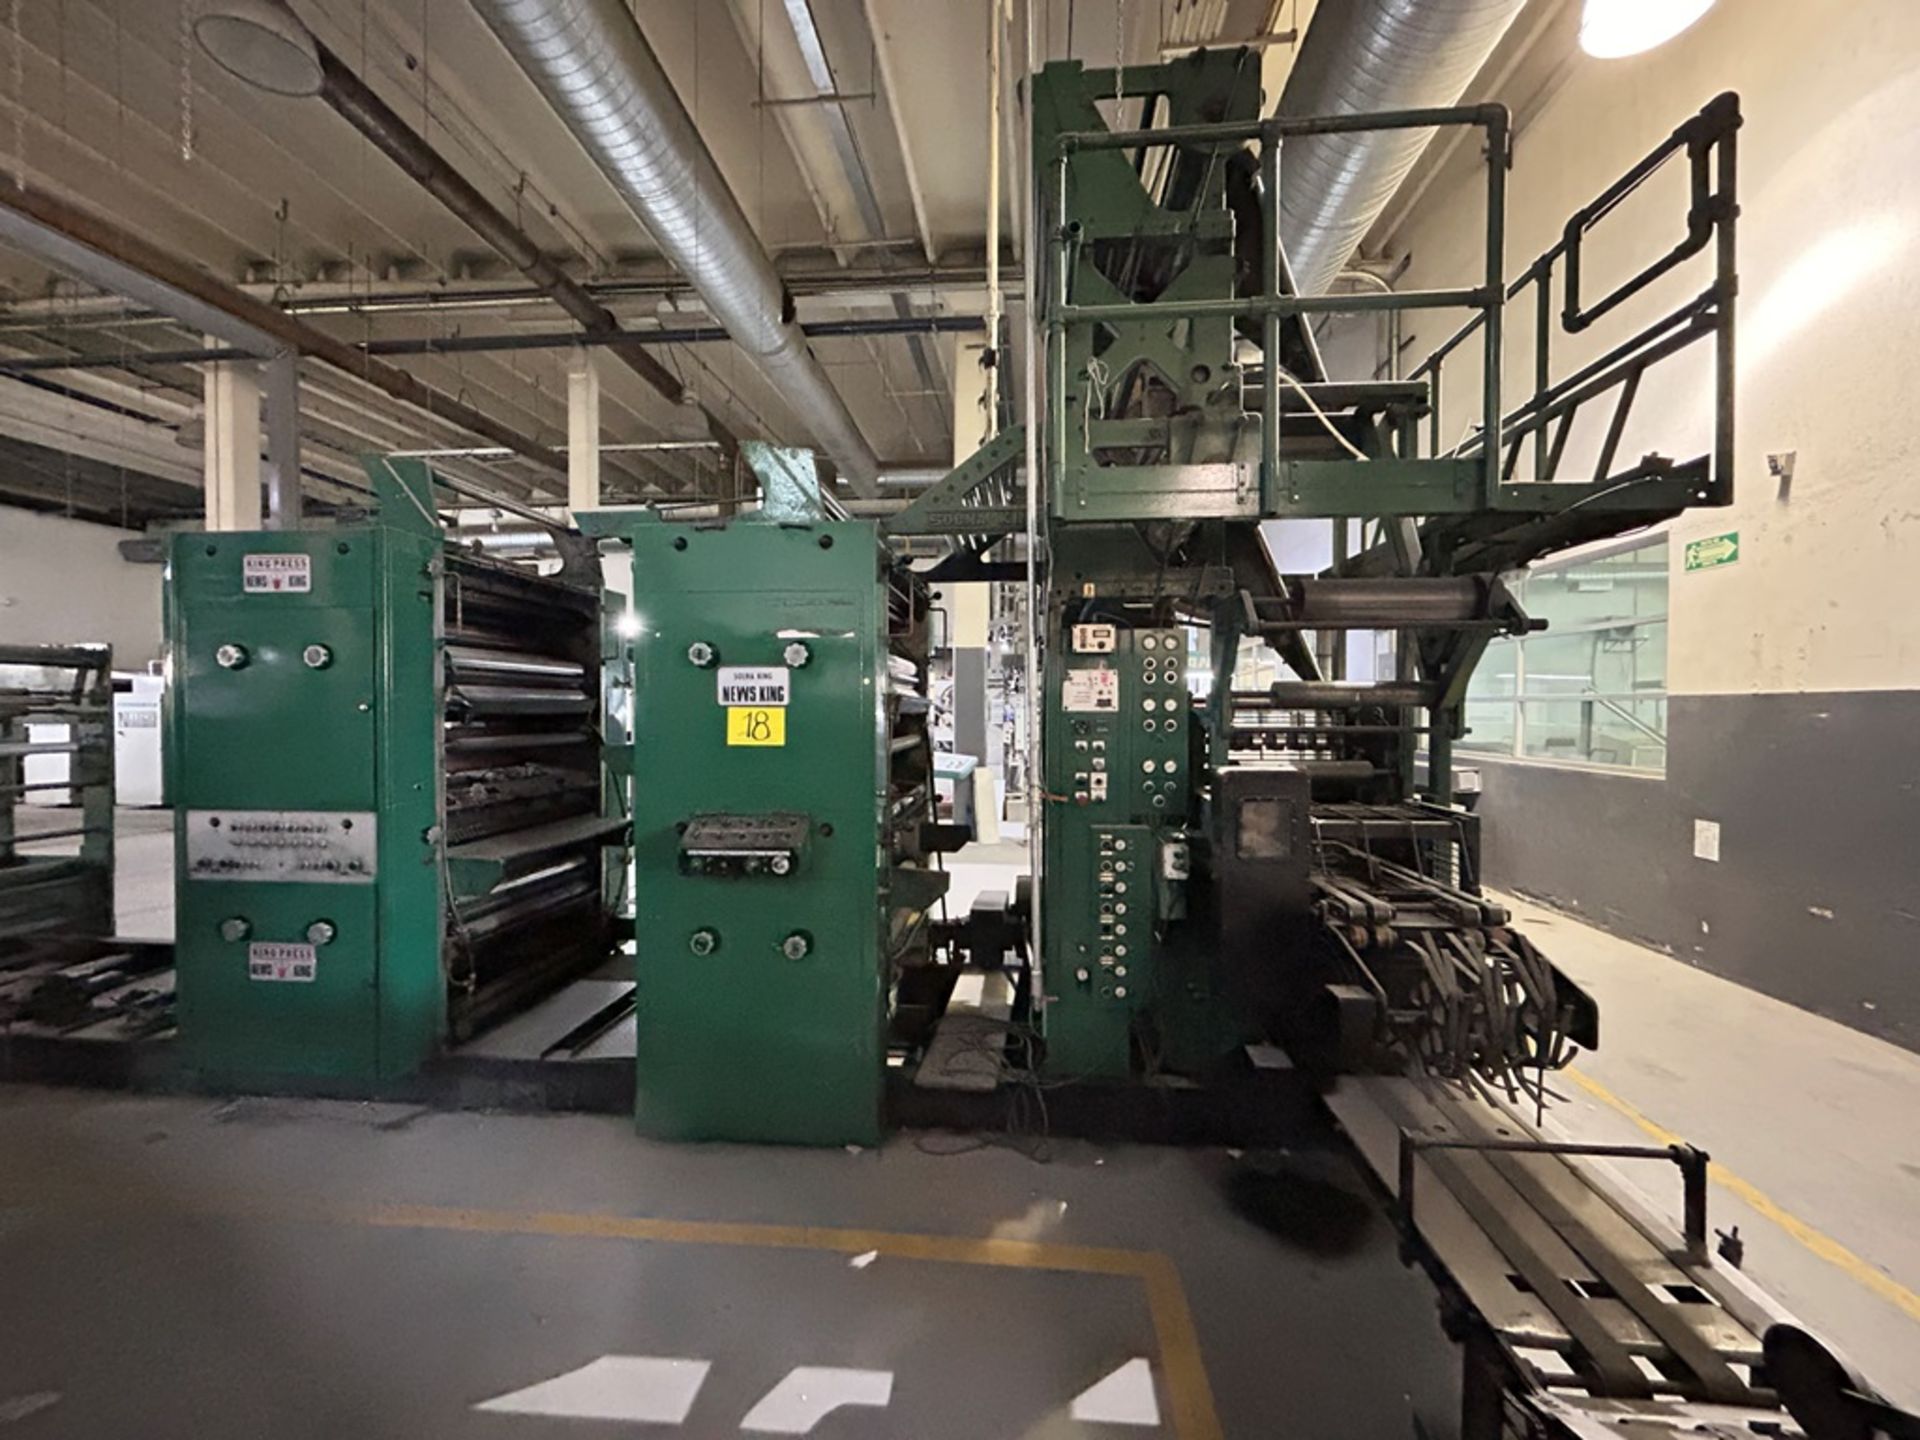 NEWS KING rotary printing machine, Model KING PRESS KJ8, Serial No. P2680-1.F21C2-9-89 CM-1000, Yea